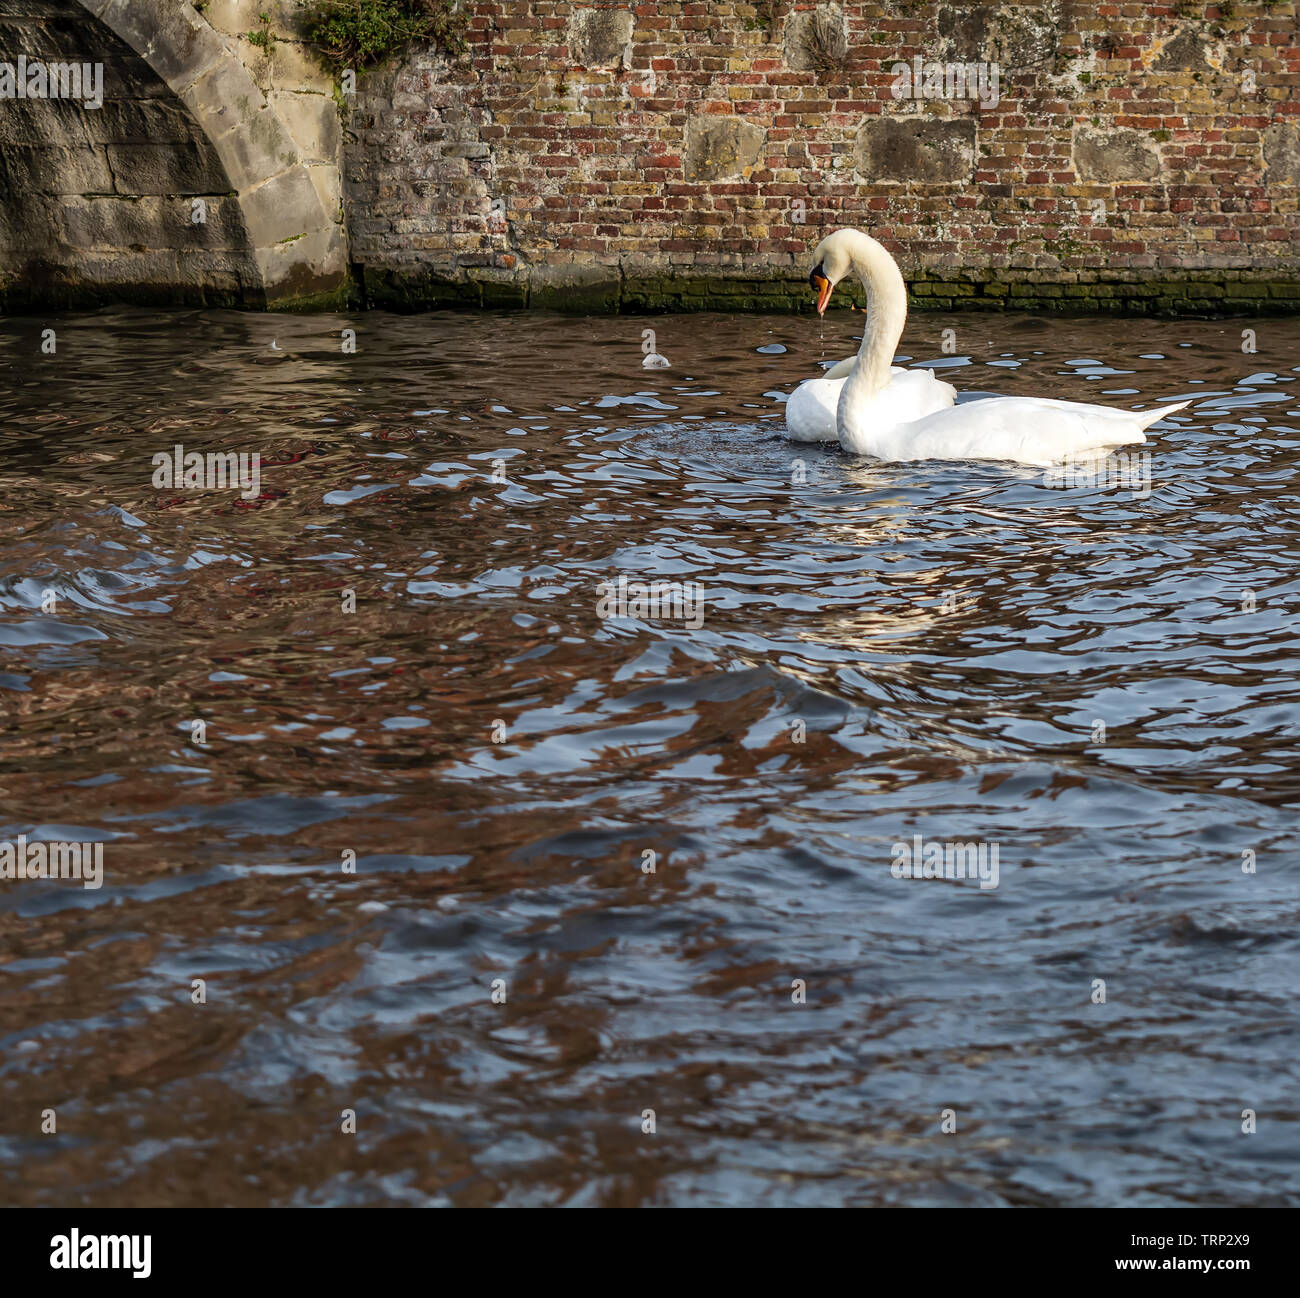 Couple de cygnes sur le canal de Bruges. Magnifique swan couple tourné dans la ville la plus romantique au monde - Bruges, Belgique. Banque D'Images